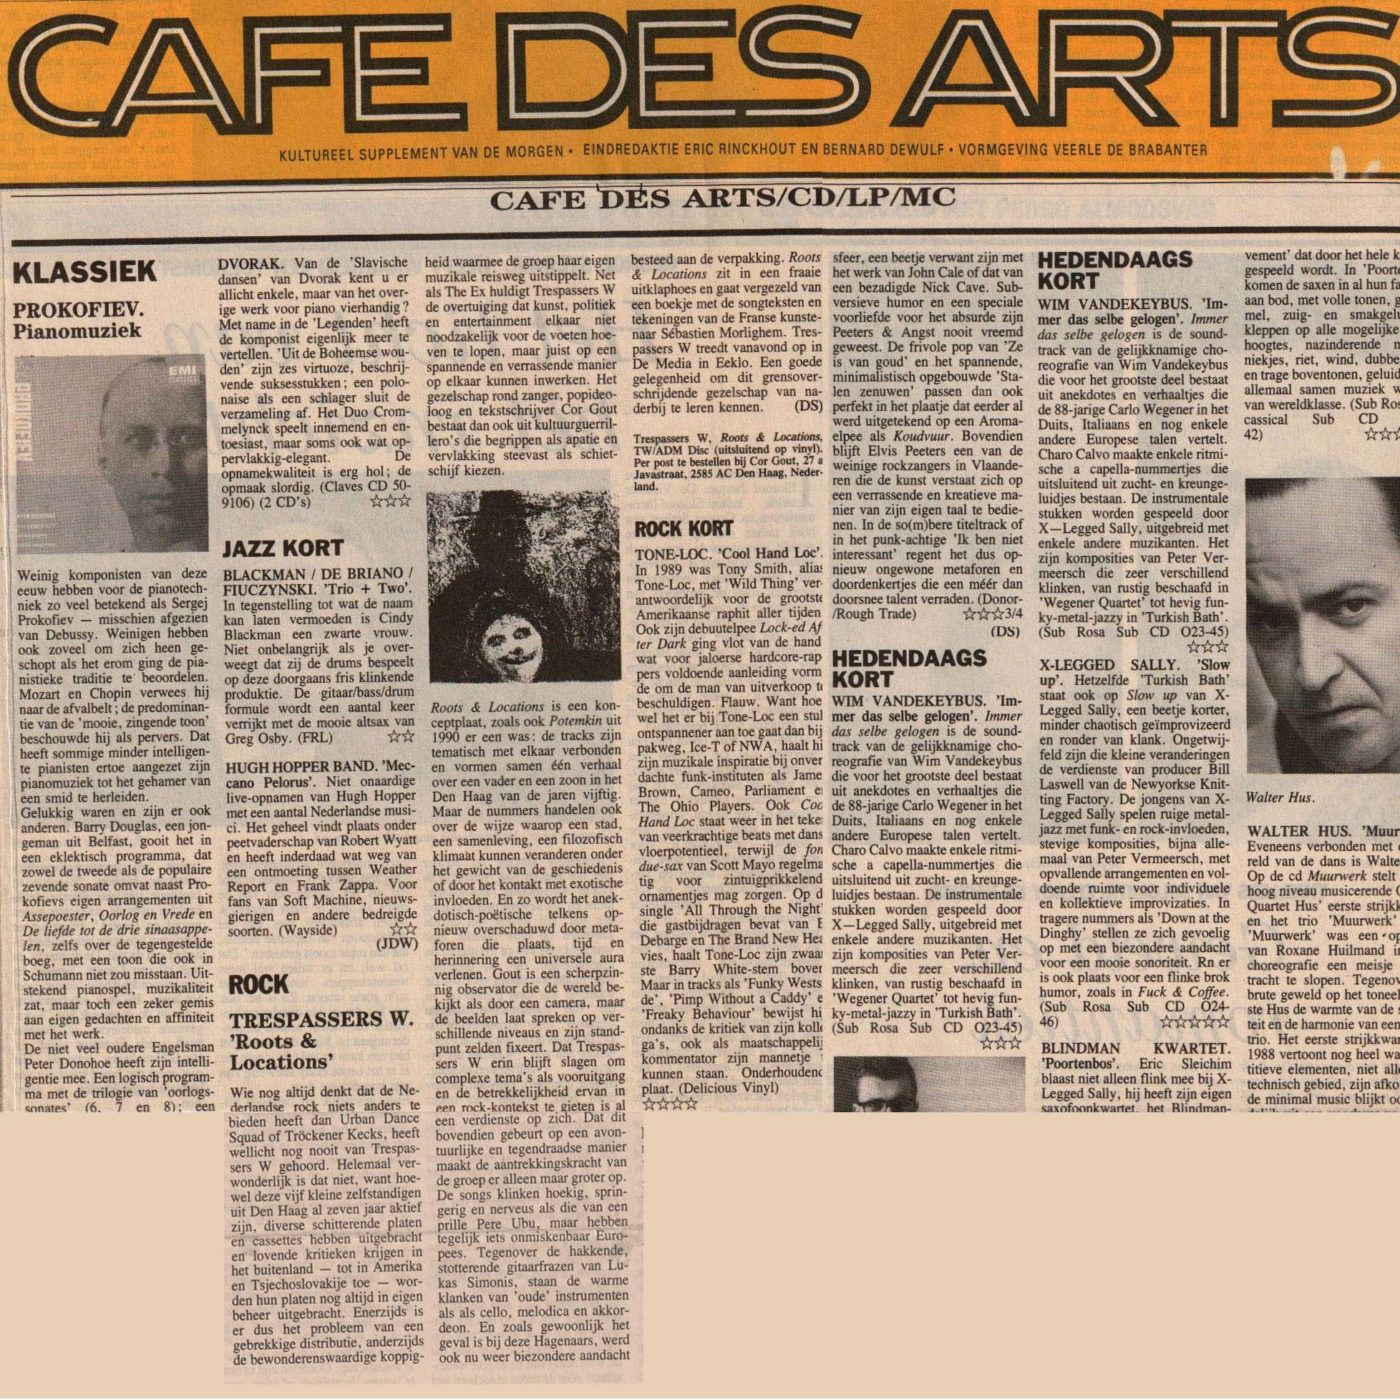 Roots and locations: Dirk Steenhaut, De Morgen, Café des Arts 17/1/1992